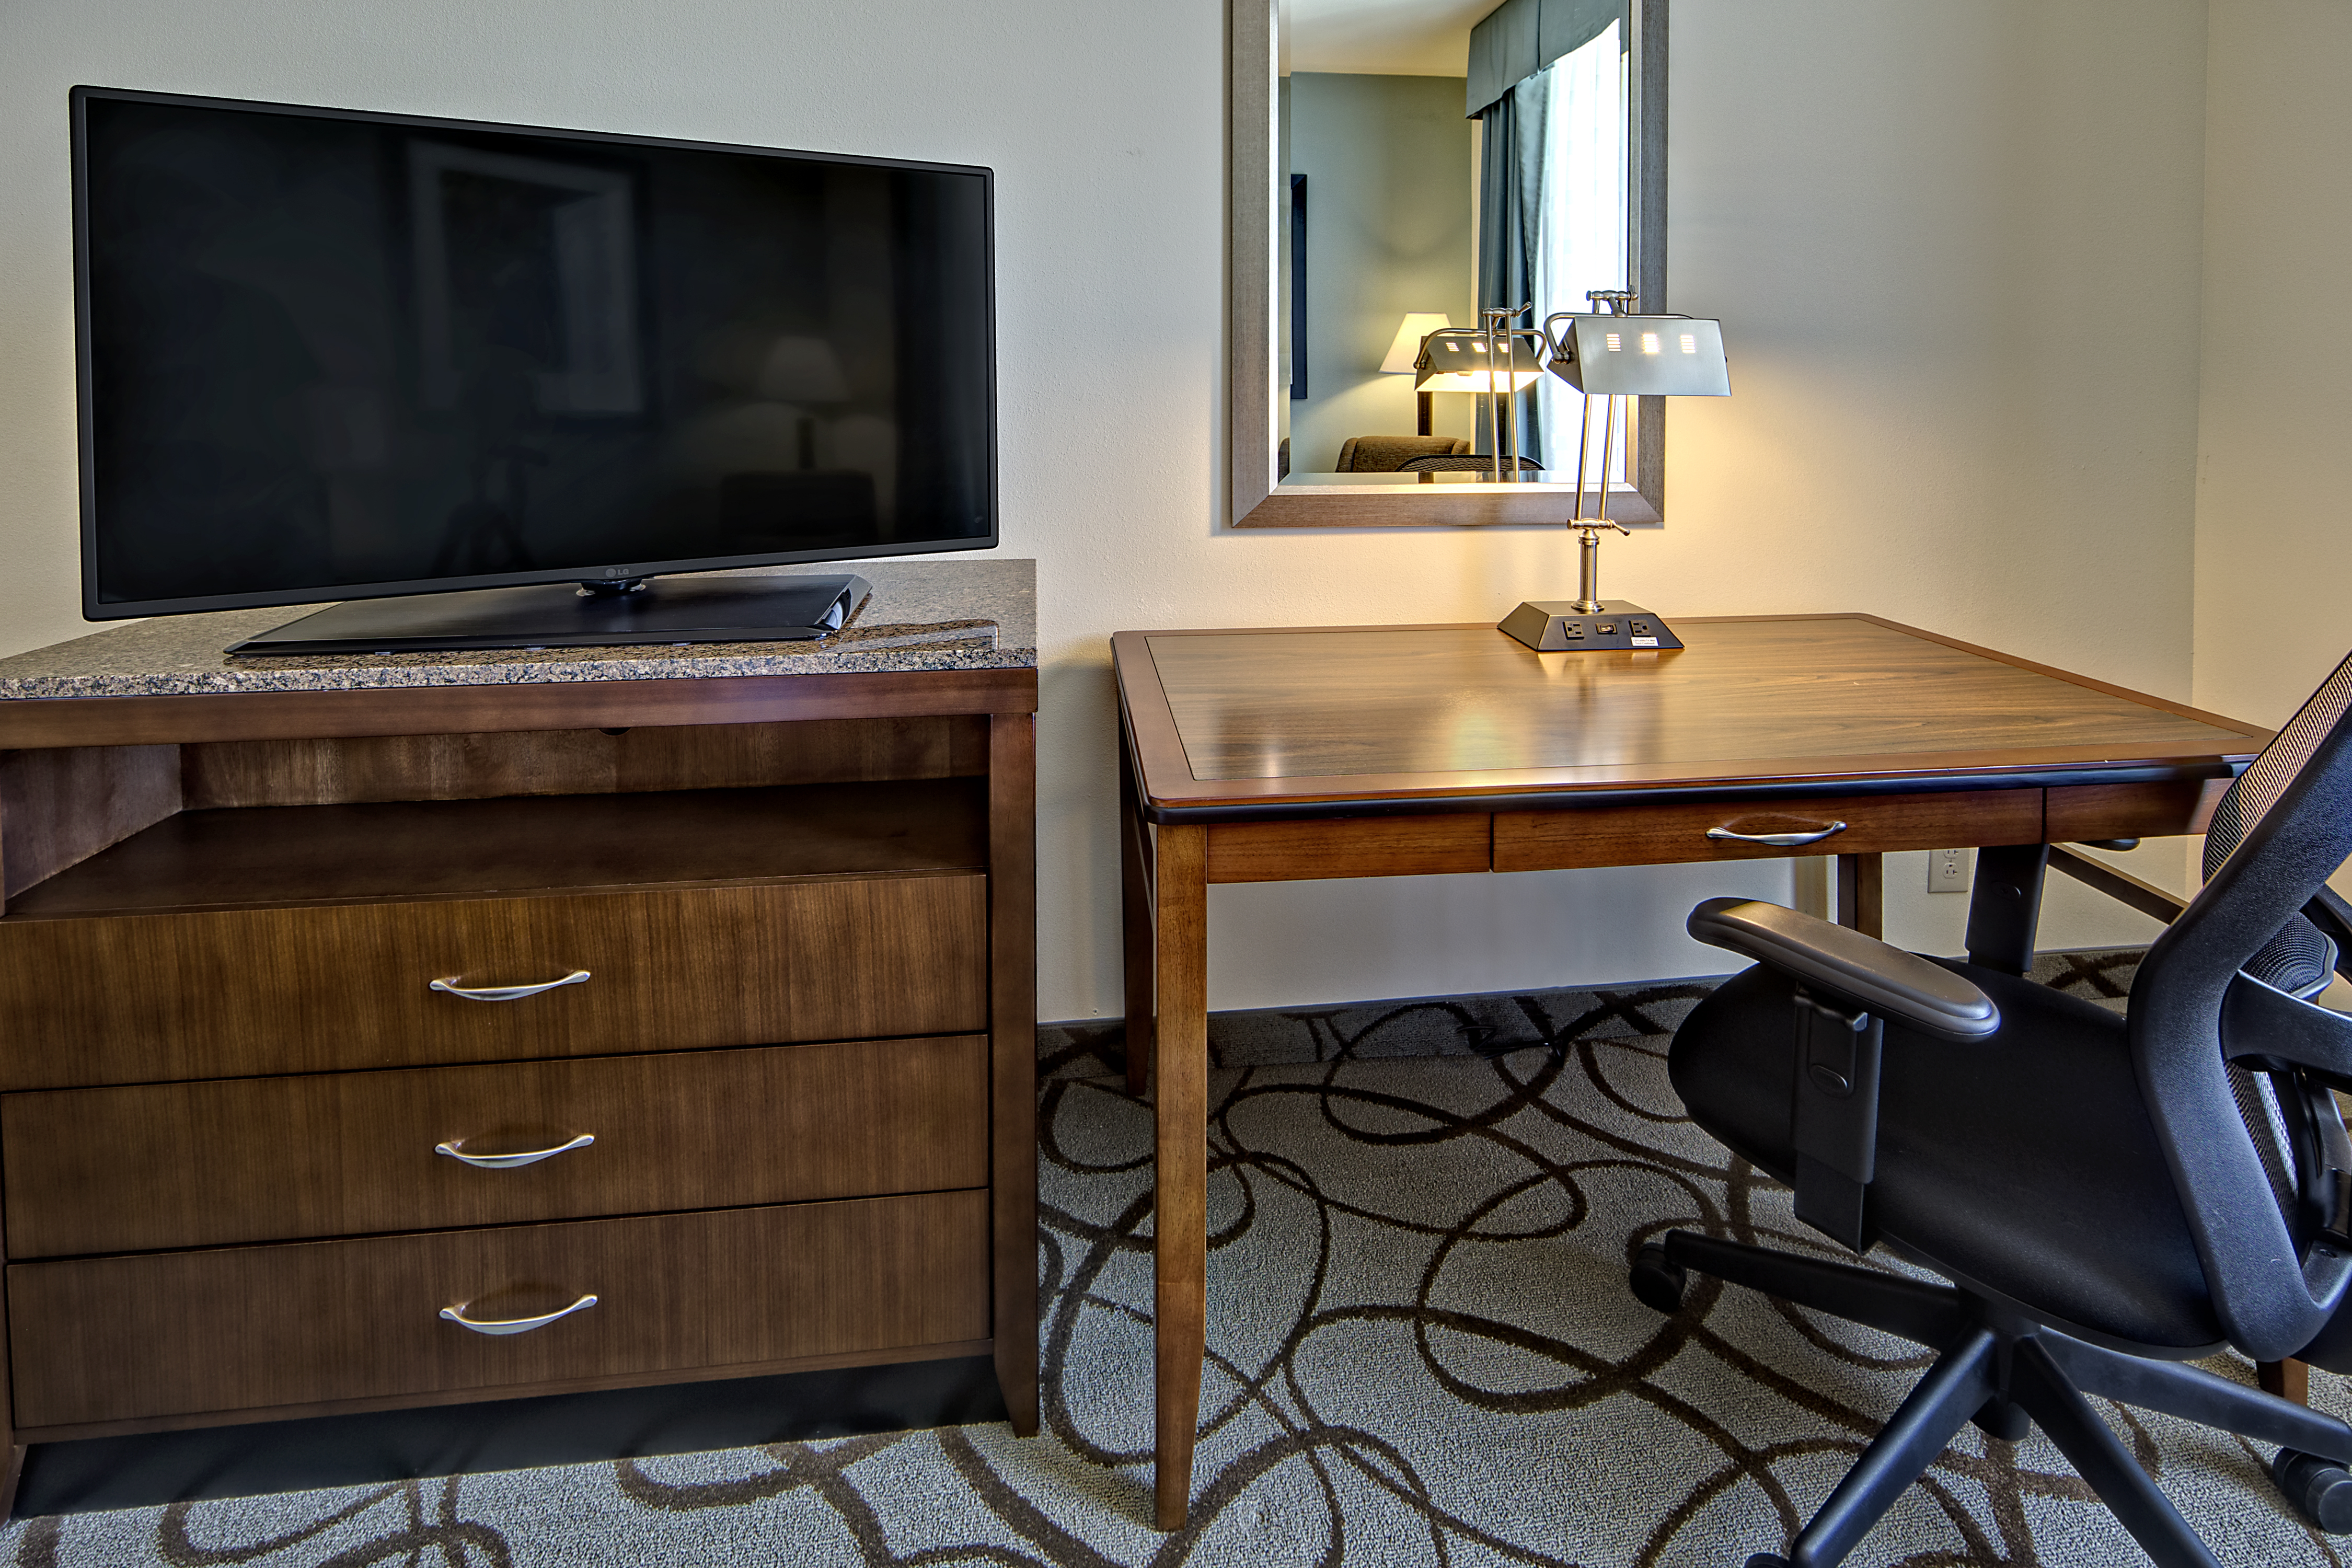 Standard Room TV and Desk